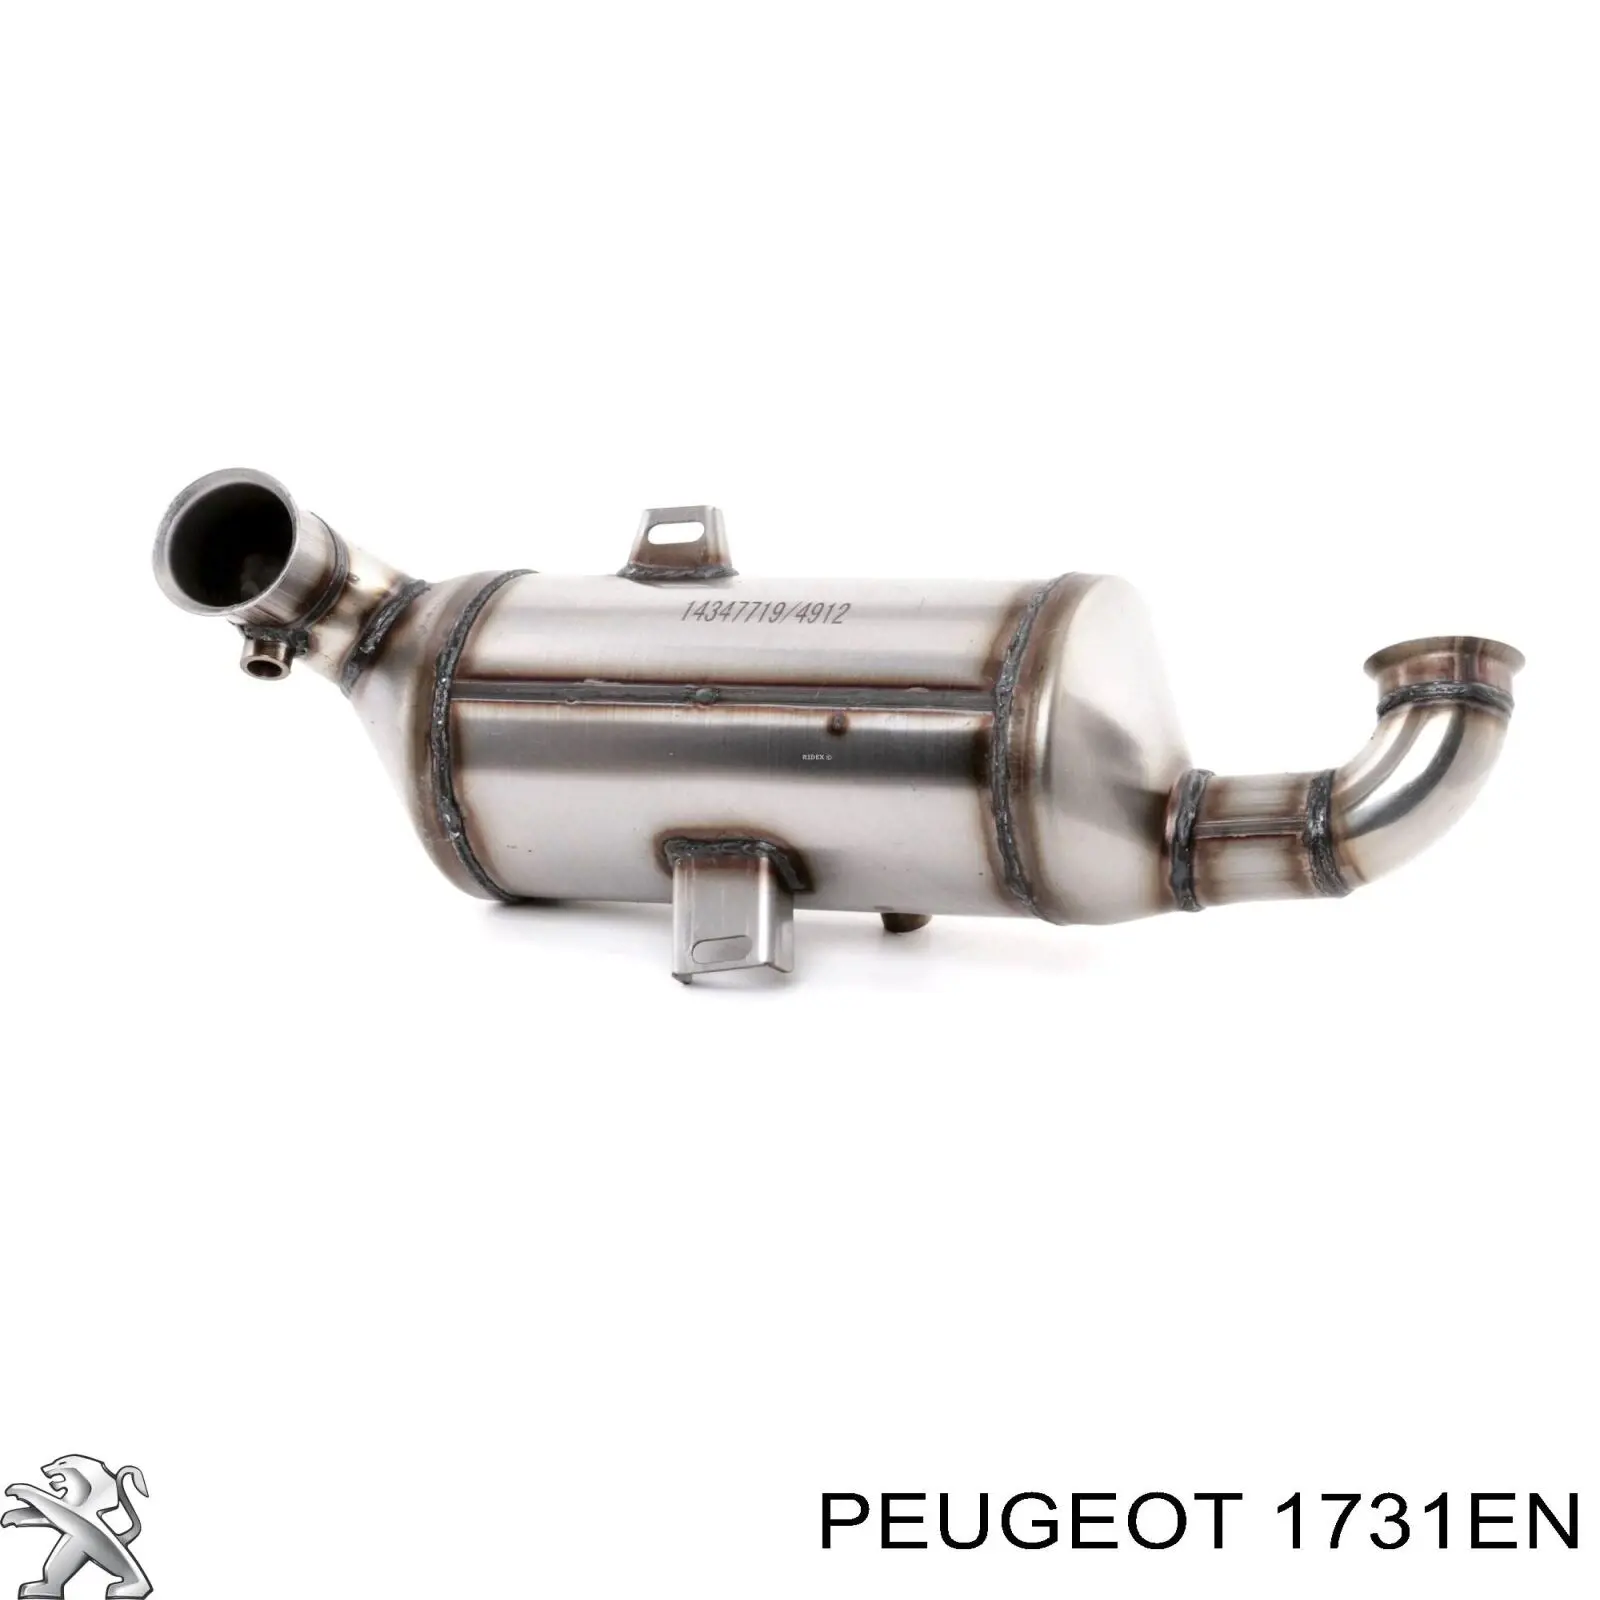 00001731EN Peugeot/Citroen 